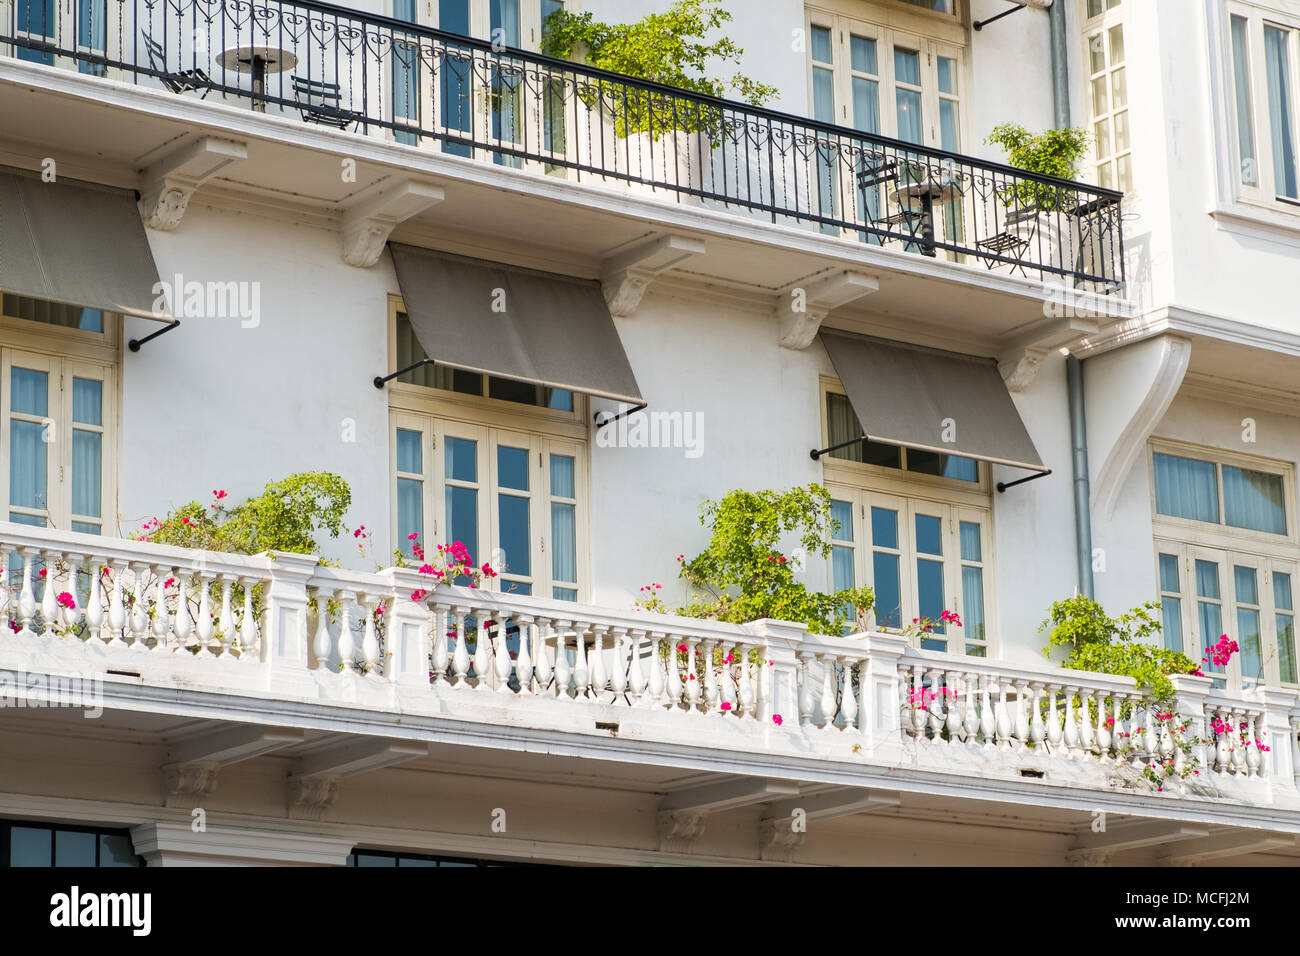 Balcon avec des plantes et des fleurs , belle façade de bâtiment historique en vieille ville, la ville de Panama Banque D'Images